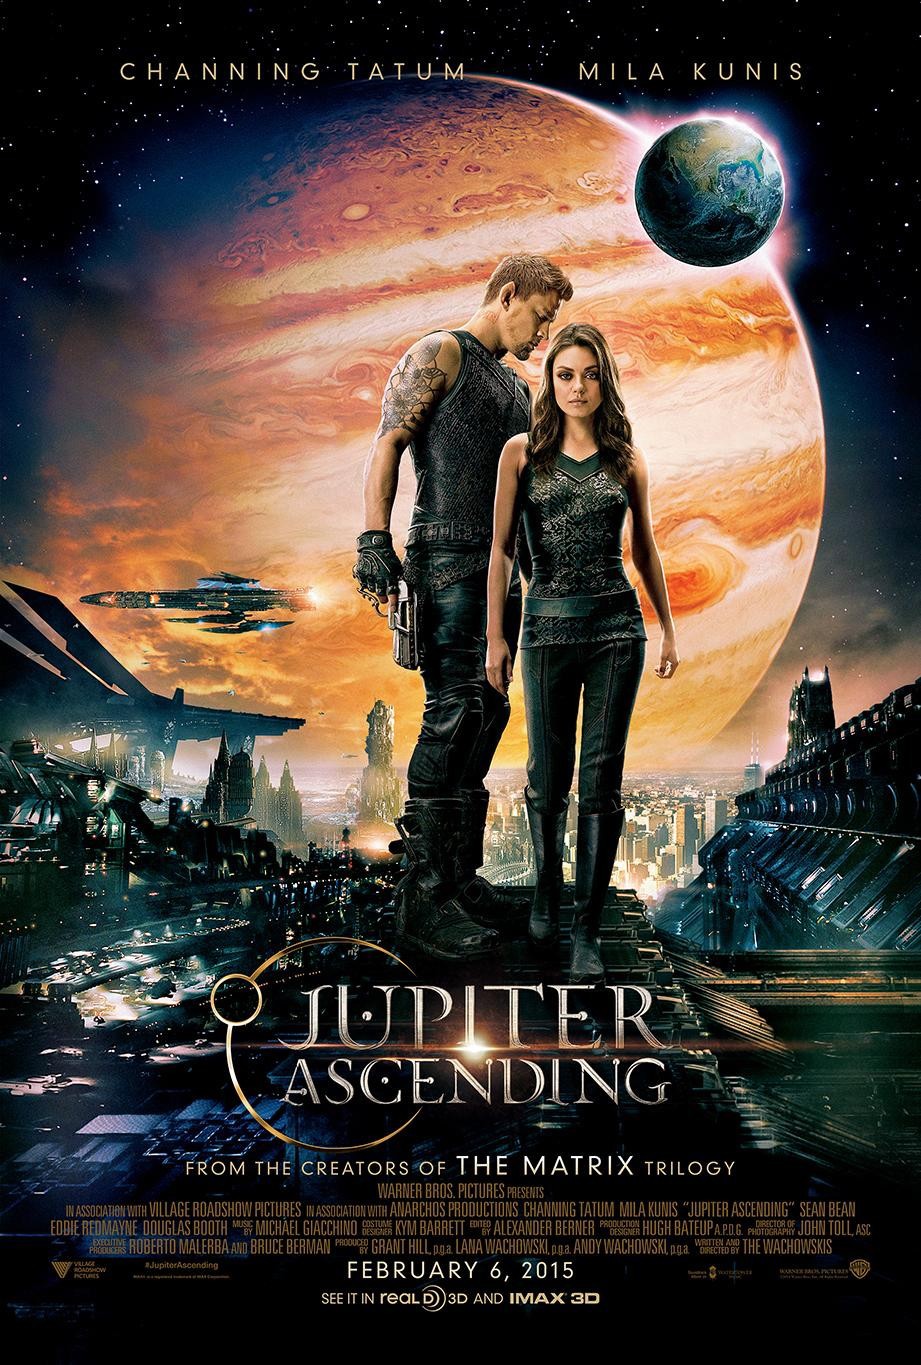 Jupiter Ascending (2015) ศึกดวงดาวพิฆาตสะท้านจักรวาล Channing Tatum